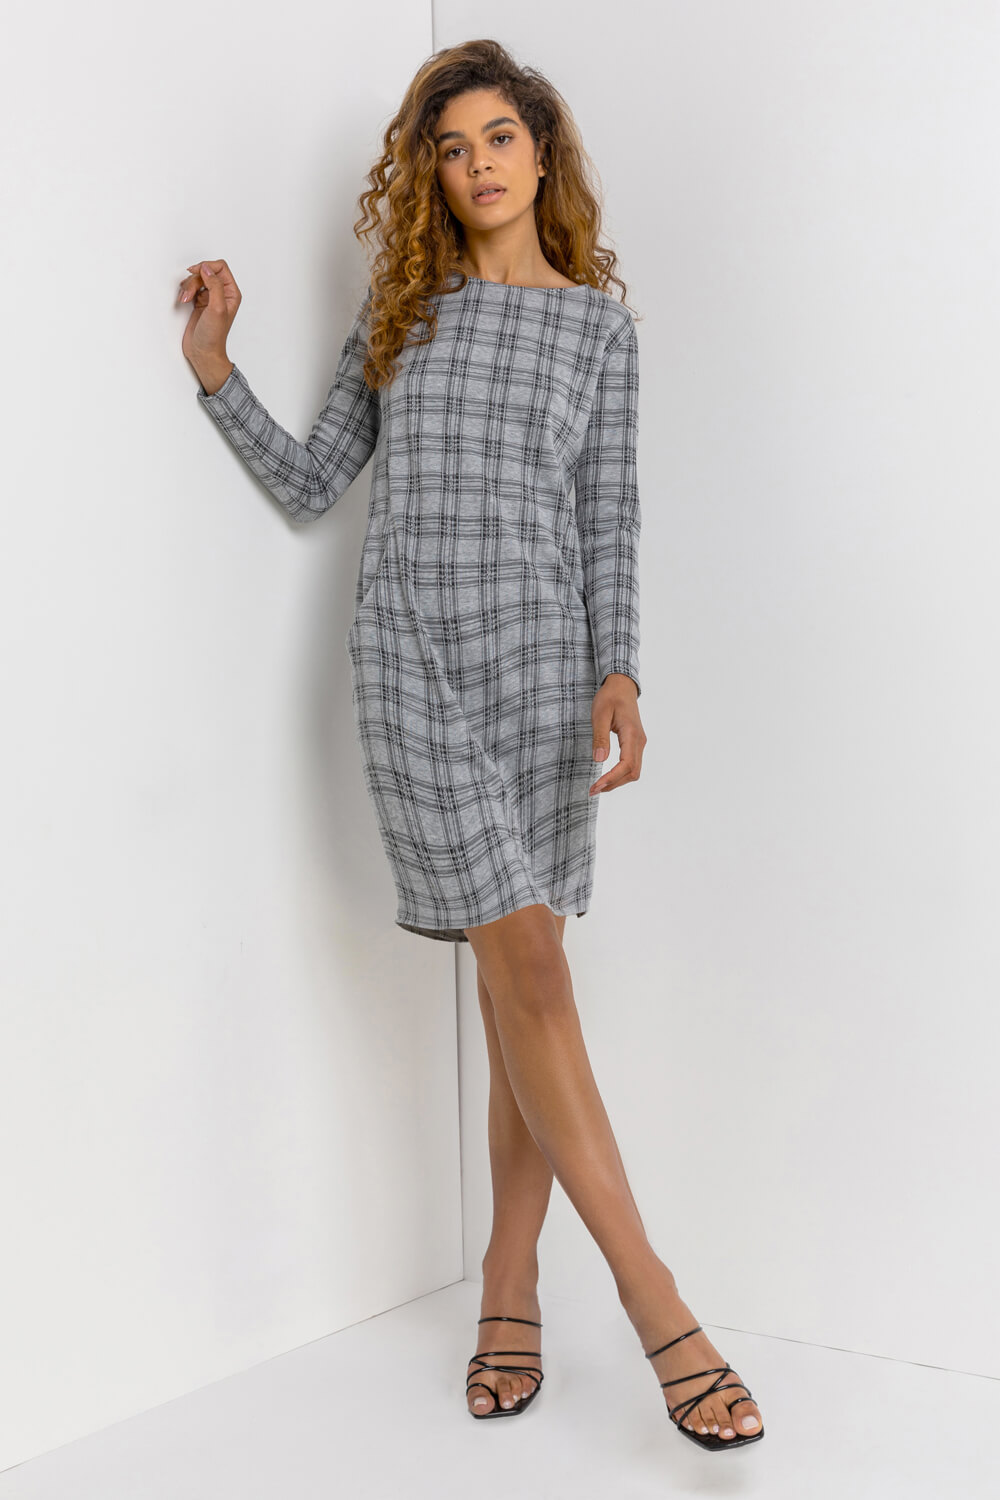 Grey Check Print Pocket Shift Dress, Image 3 of 5